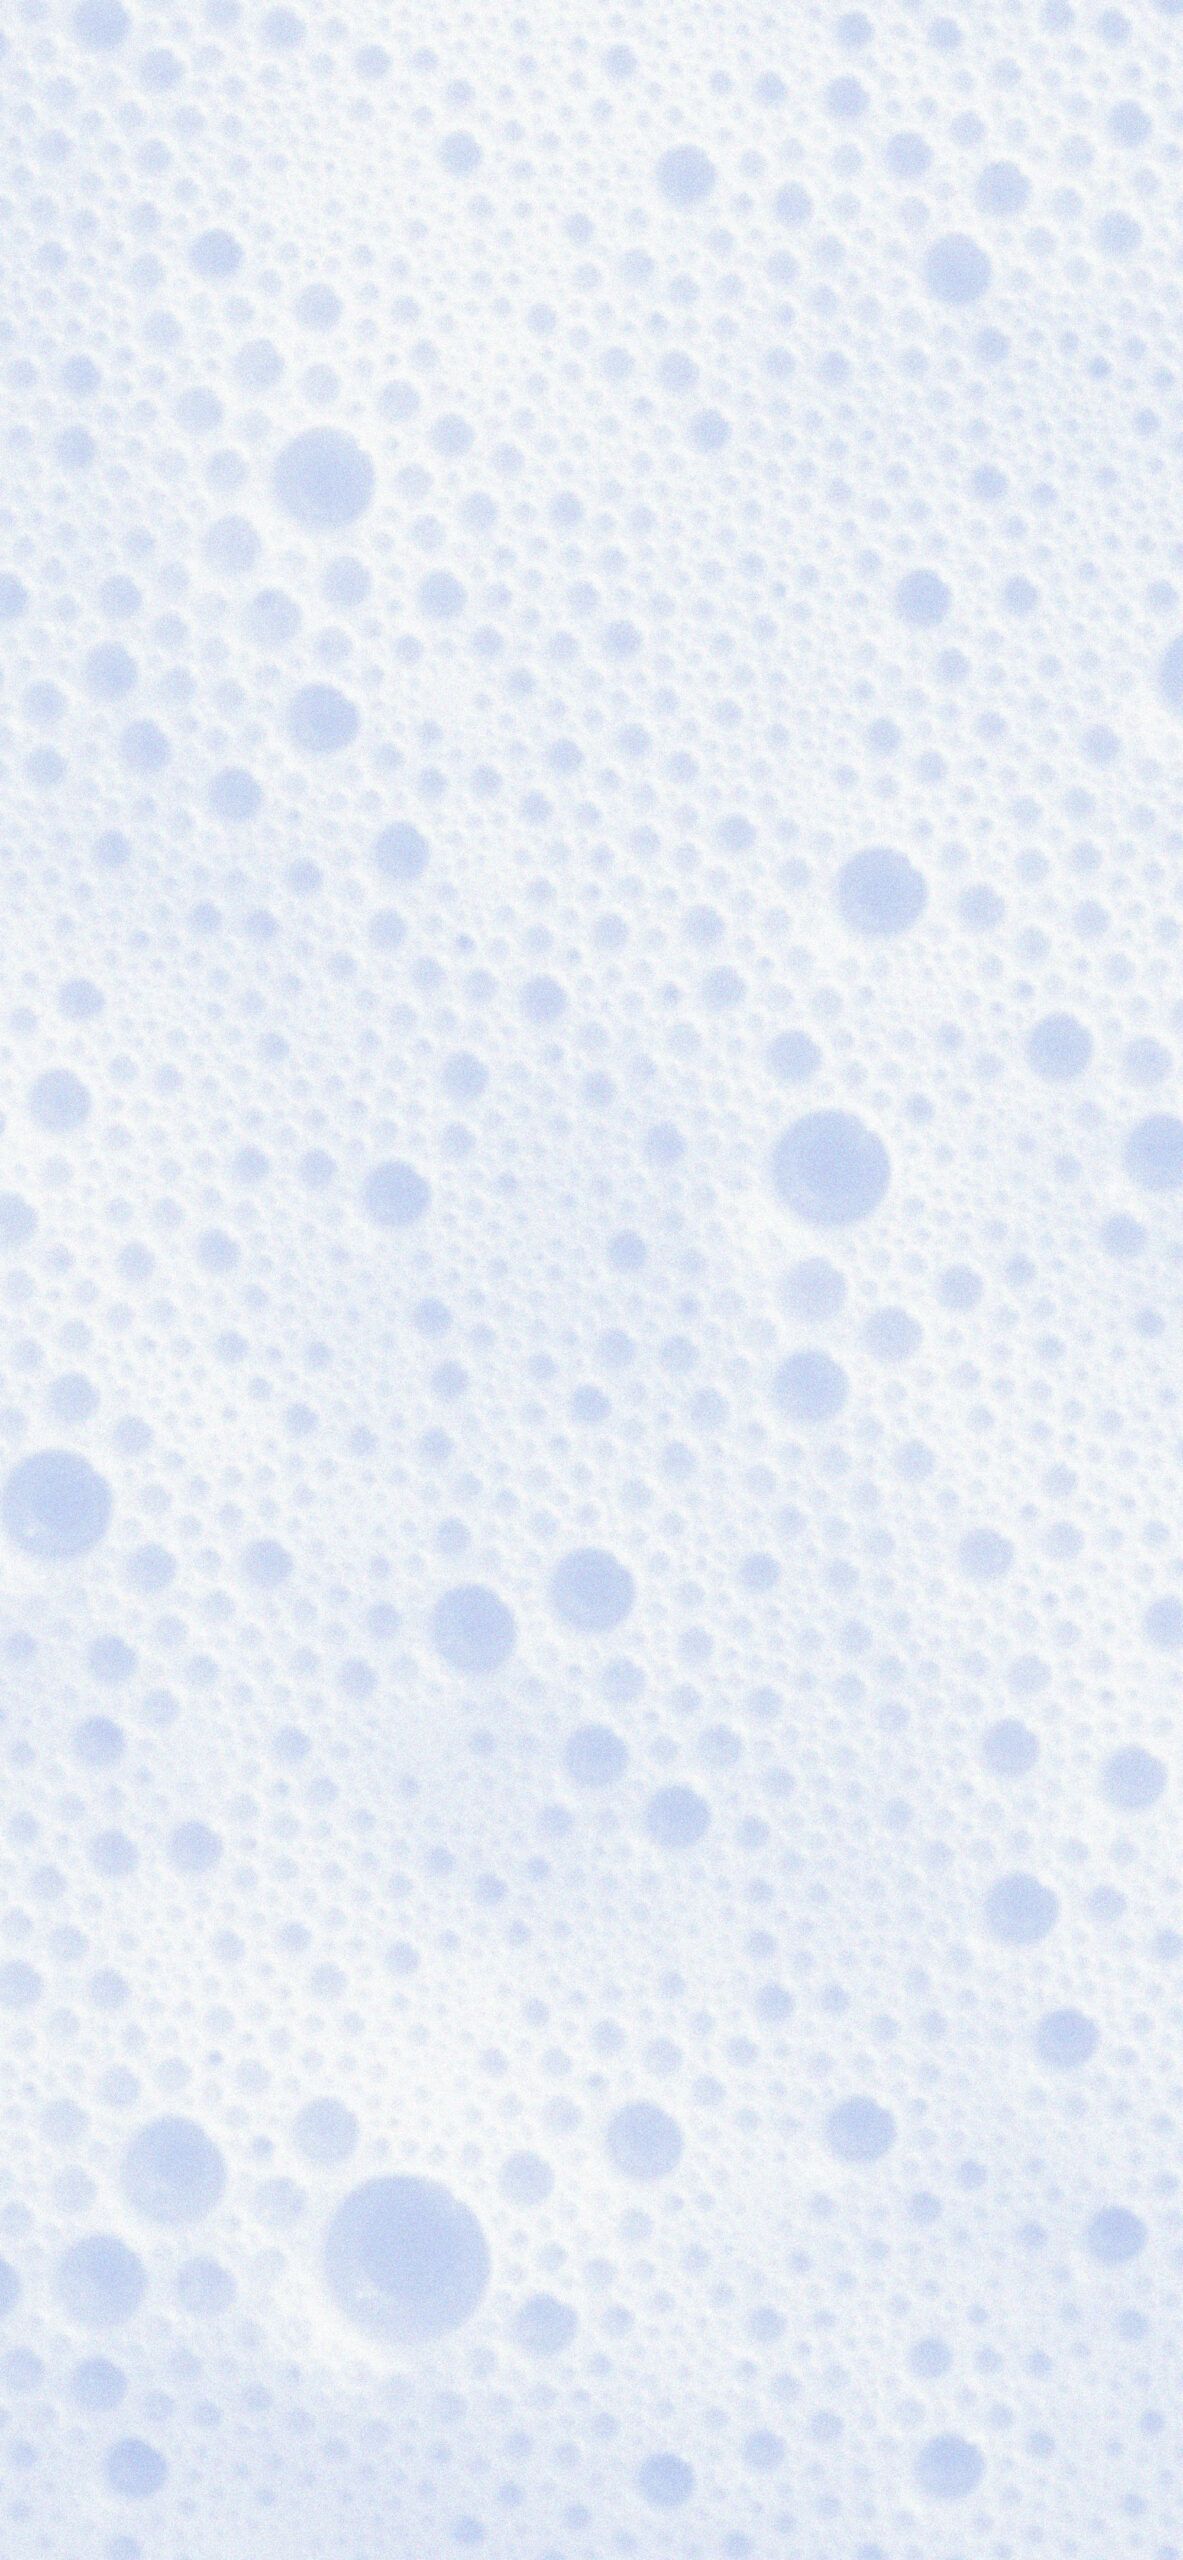 Aesthetic Light Blue Wallpaper Aesthetic Wallpaper for iPhone Free